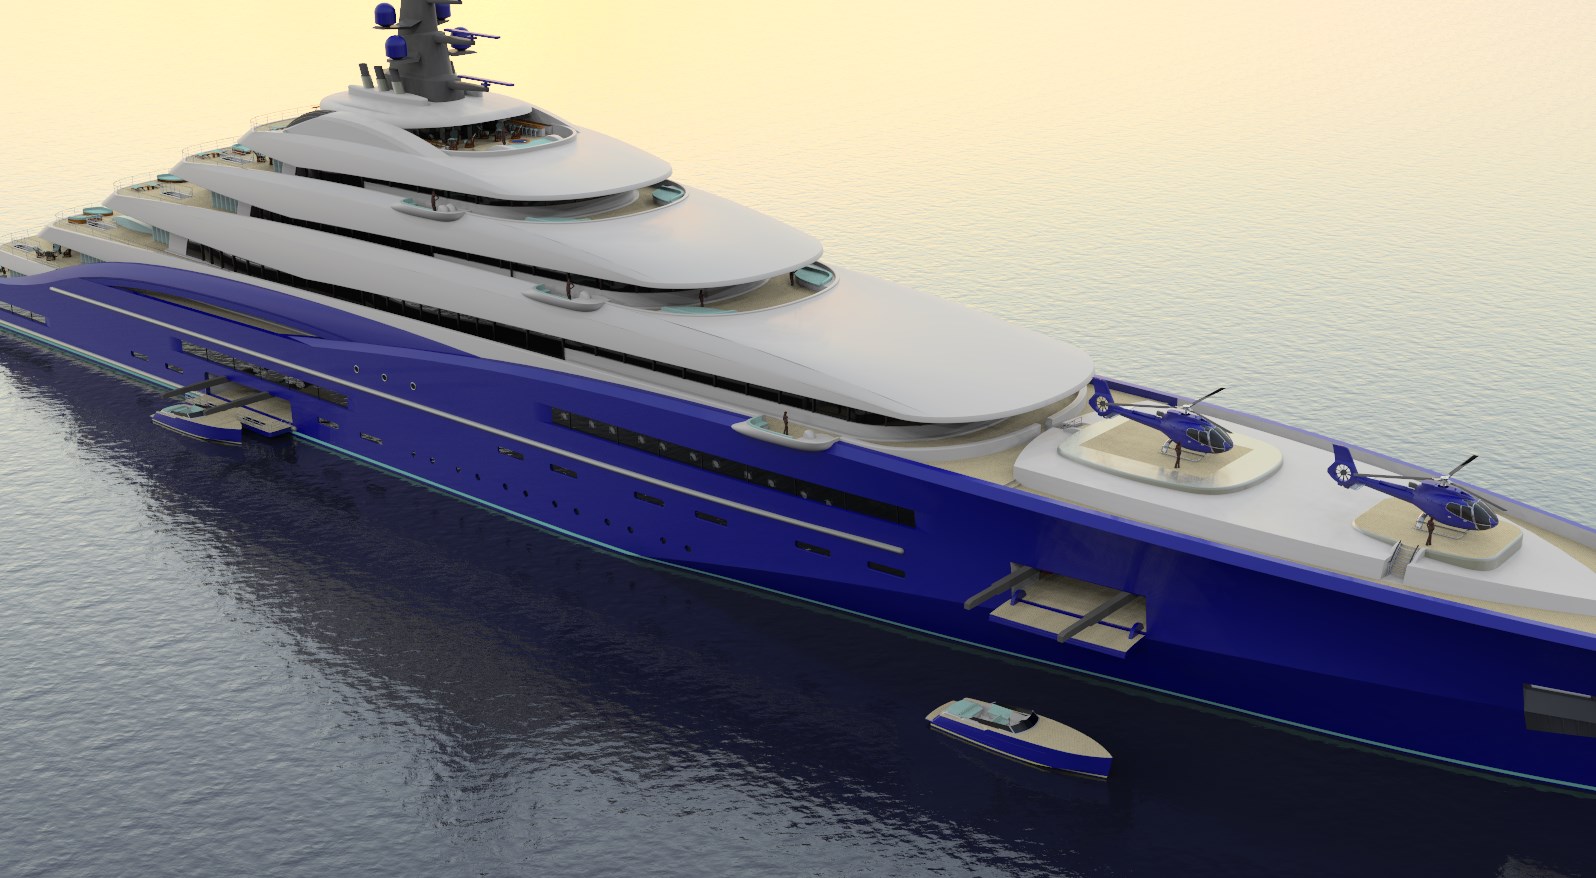 double century yacht